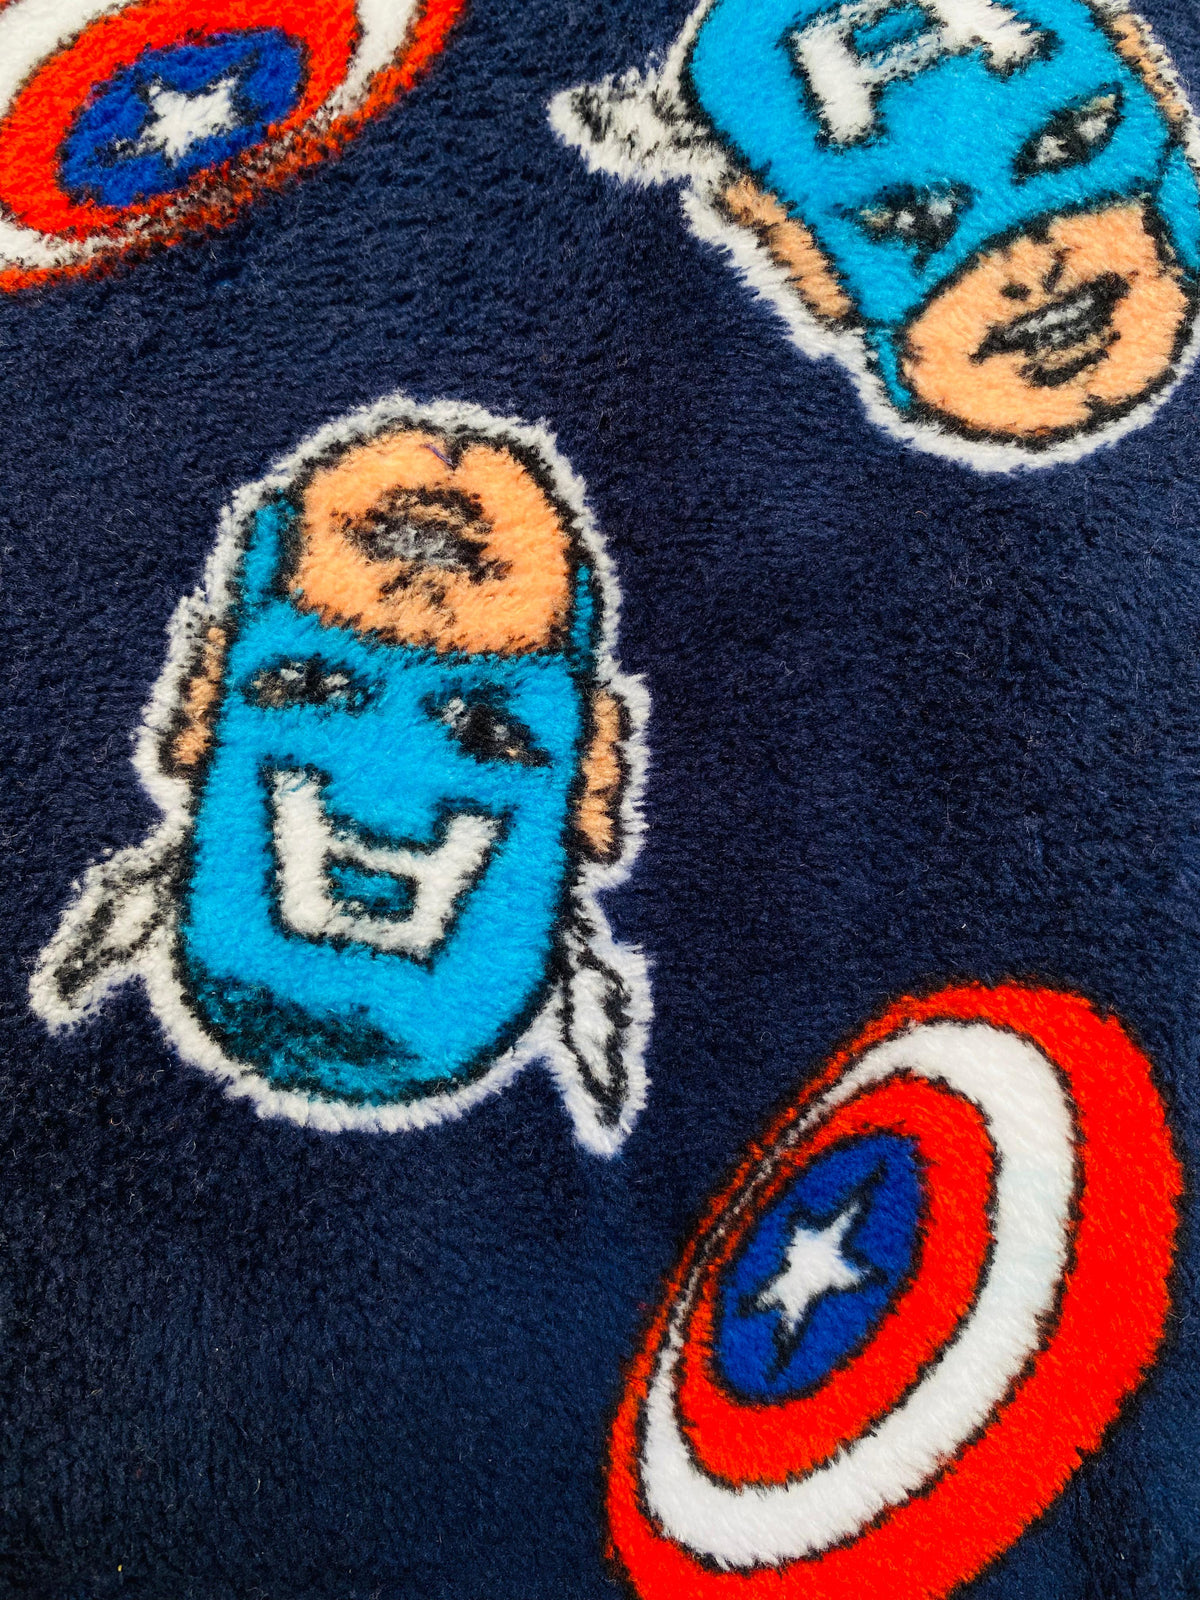 Captain America fleece pj